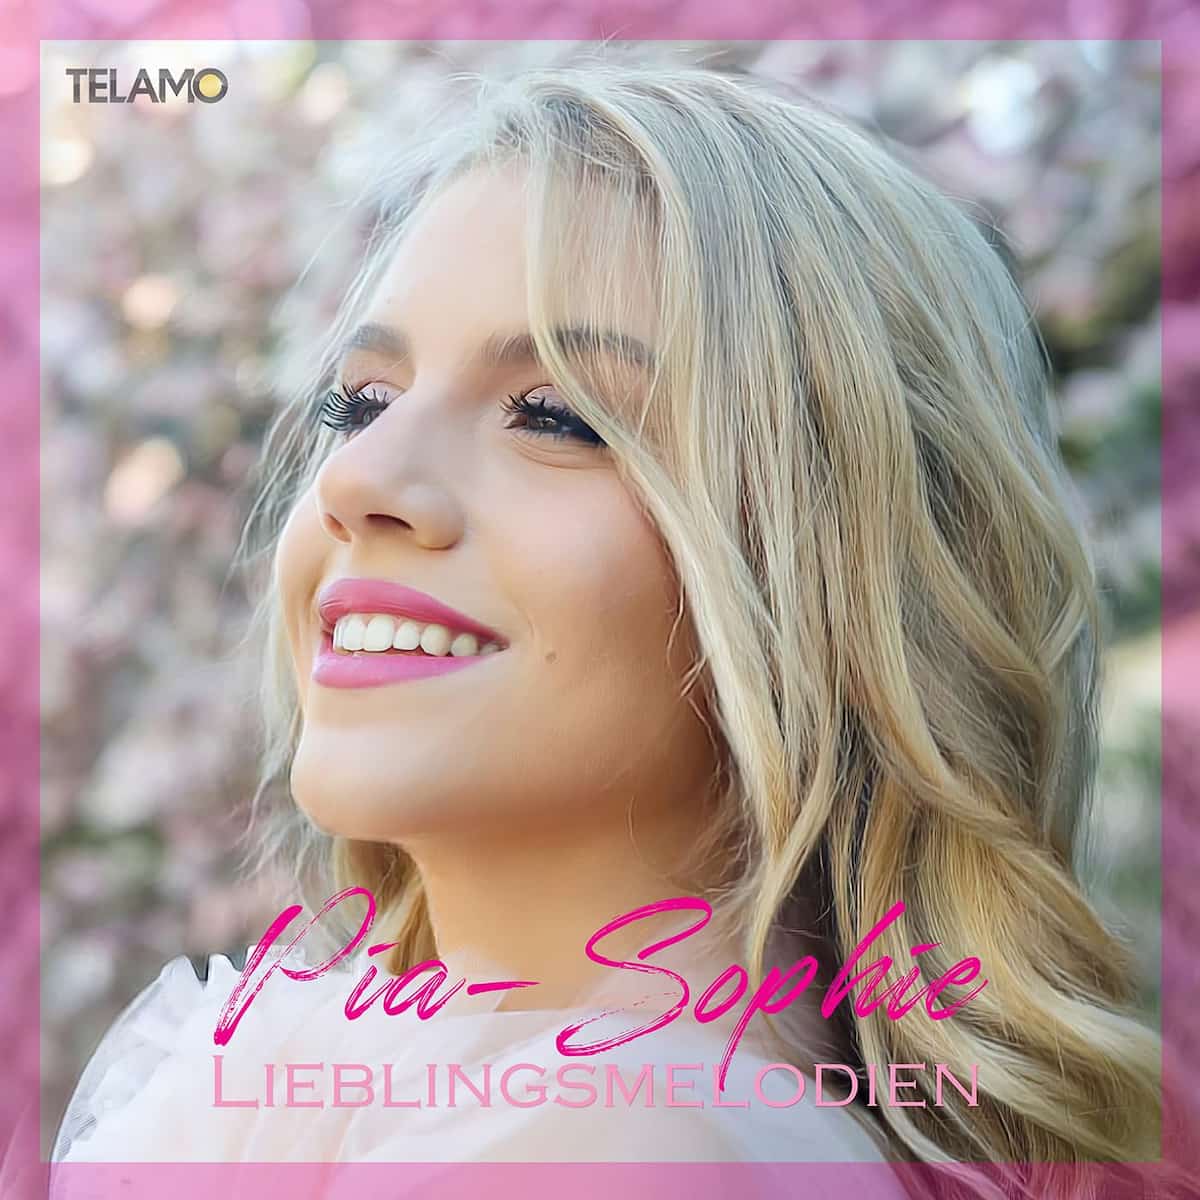 Pia-Sophie - Schlager-Album “Lieblingsmelodien” 2023 veröffentlicht - hier im Bild das Album-Cover mit Pia-Sophie in Großaufnahme